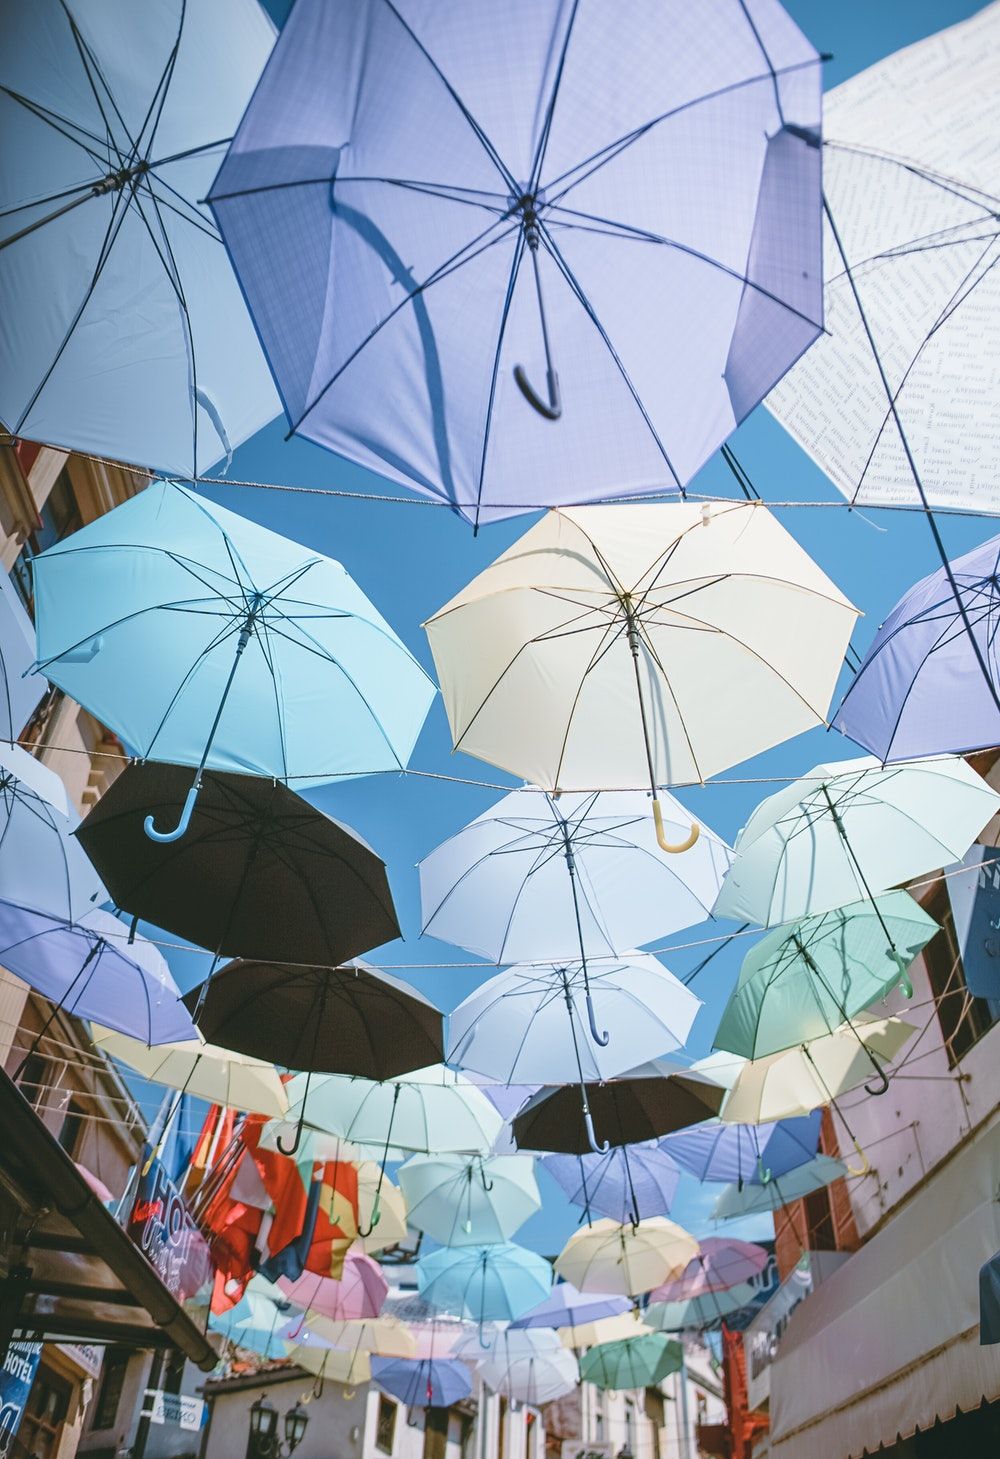 چتر های رنگارنگ آویزان شده در مسیر کوچه ای باریک